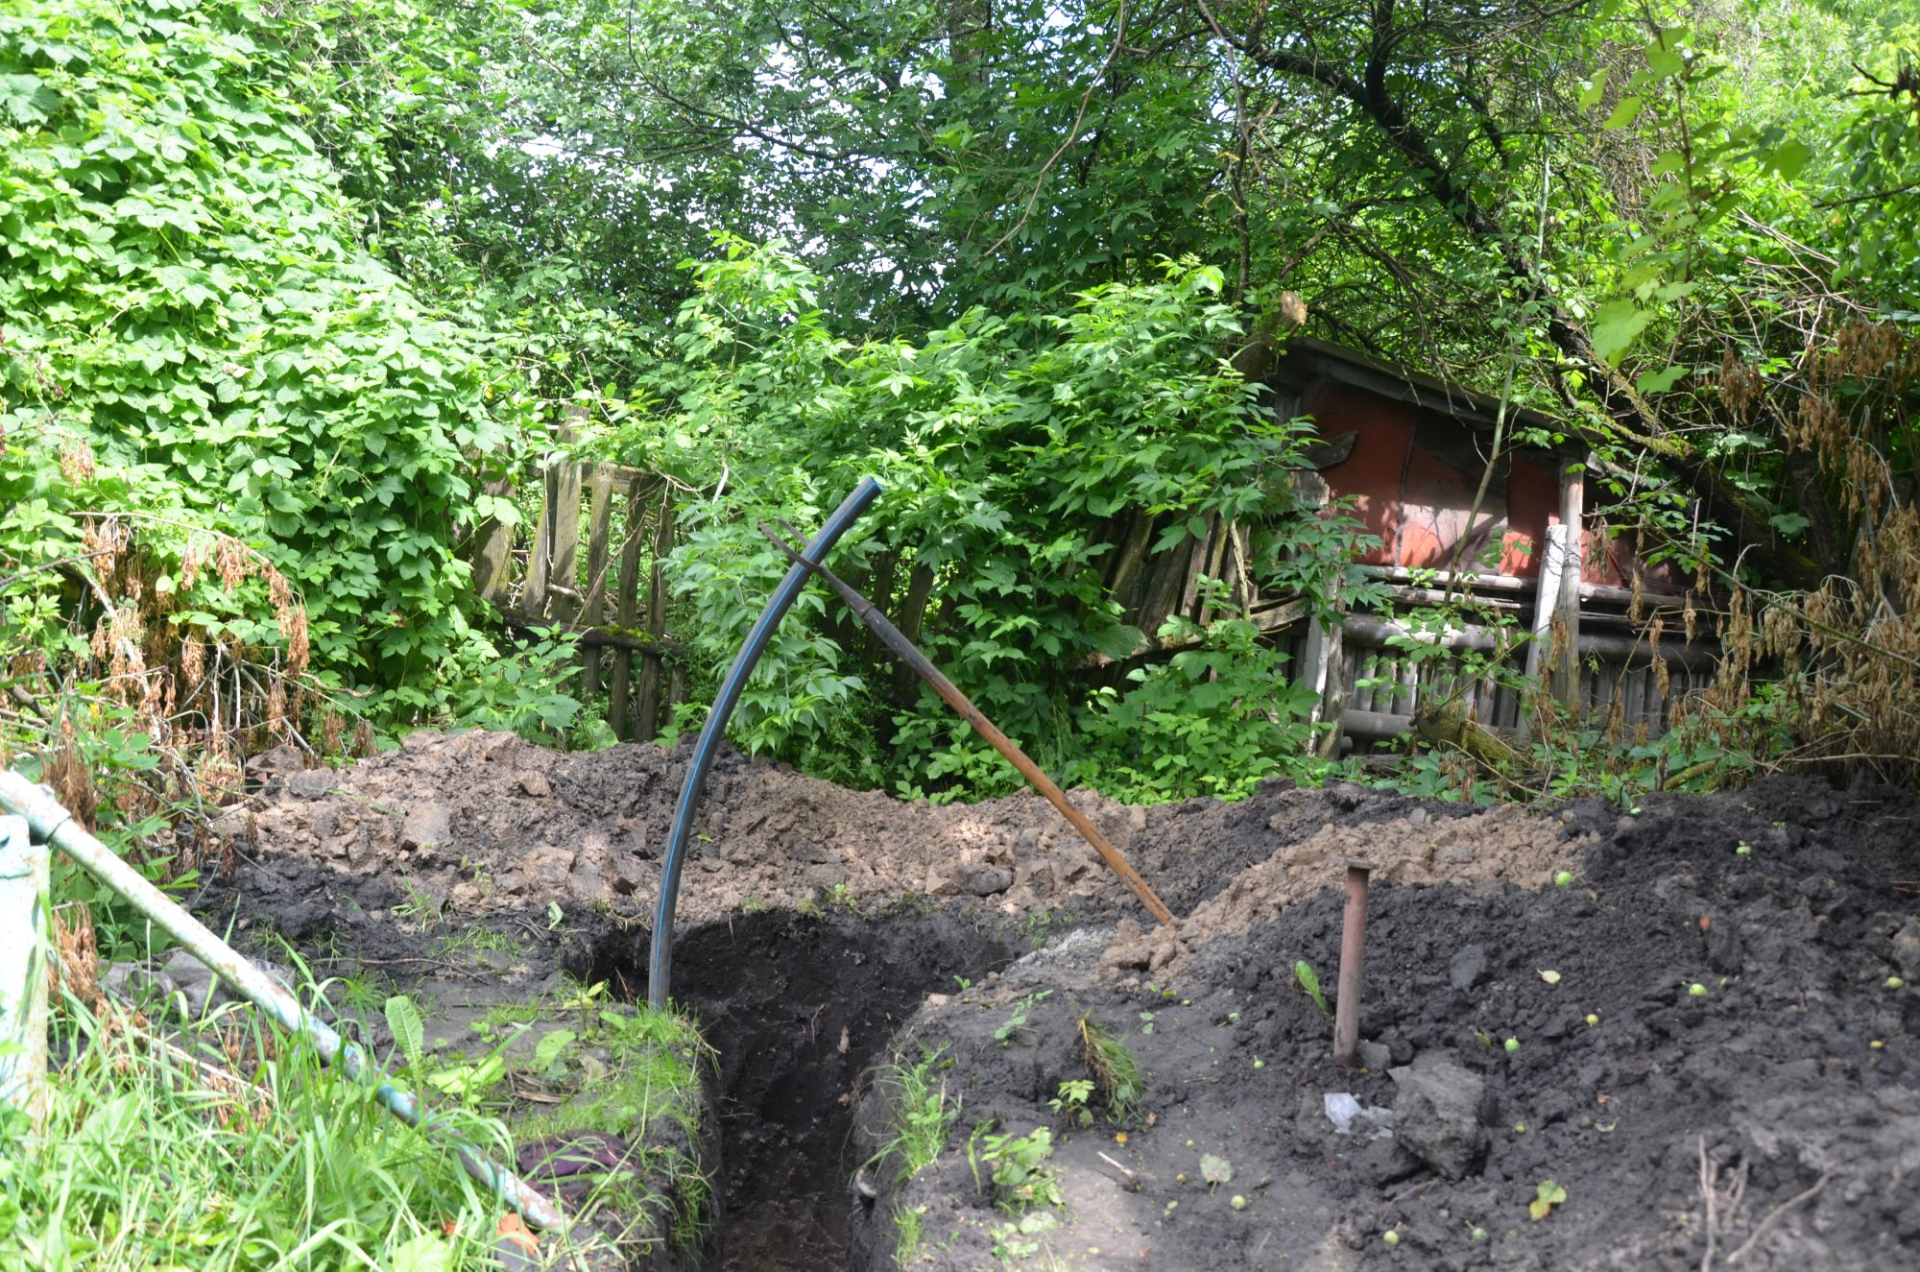 За хатою рясно буяє кропива, перед будинком – яма-траншея, це нещодавно викопали свердловину